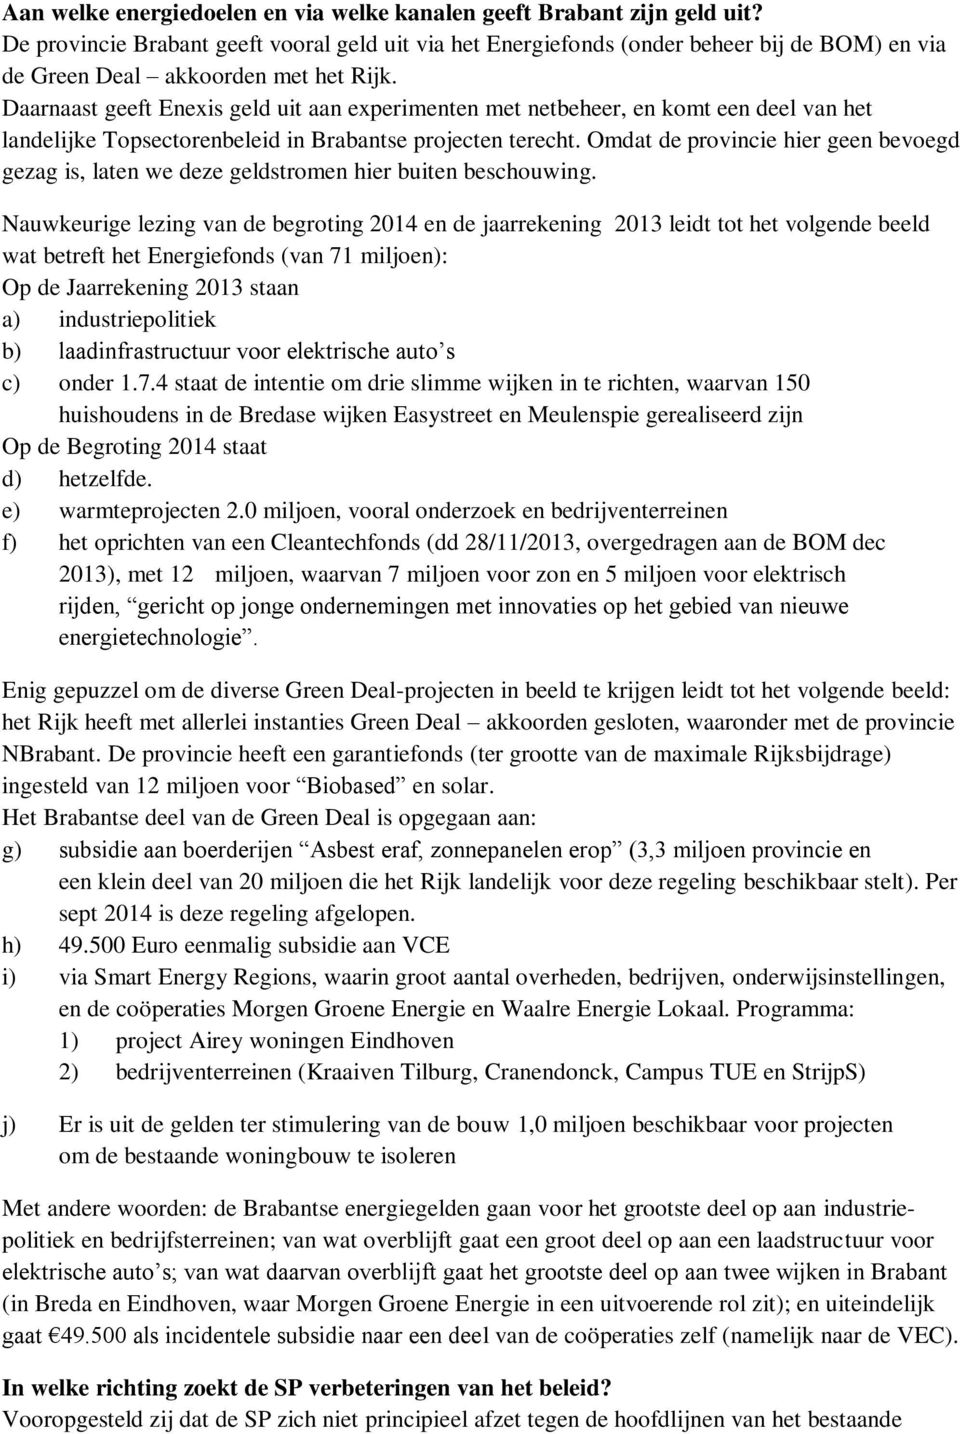 Daarnaast geeft Enexis geld uit aan experimenten met netbeheer, en komt een deel van het landelijke Topsectorenbeleid in Brabantse projecten terecht.